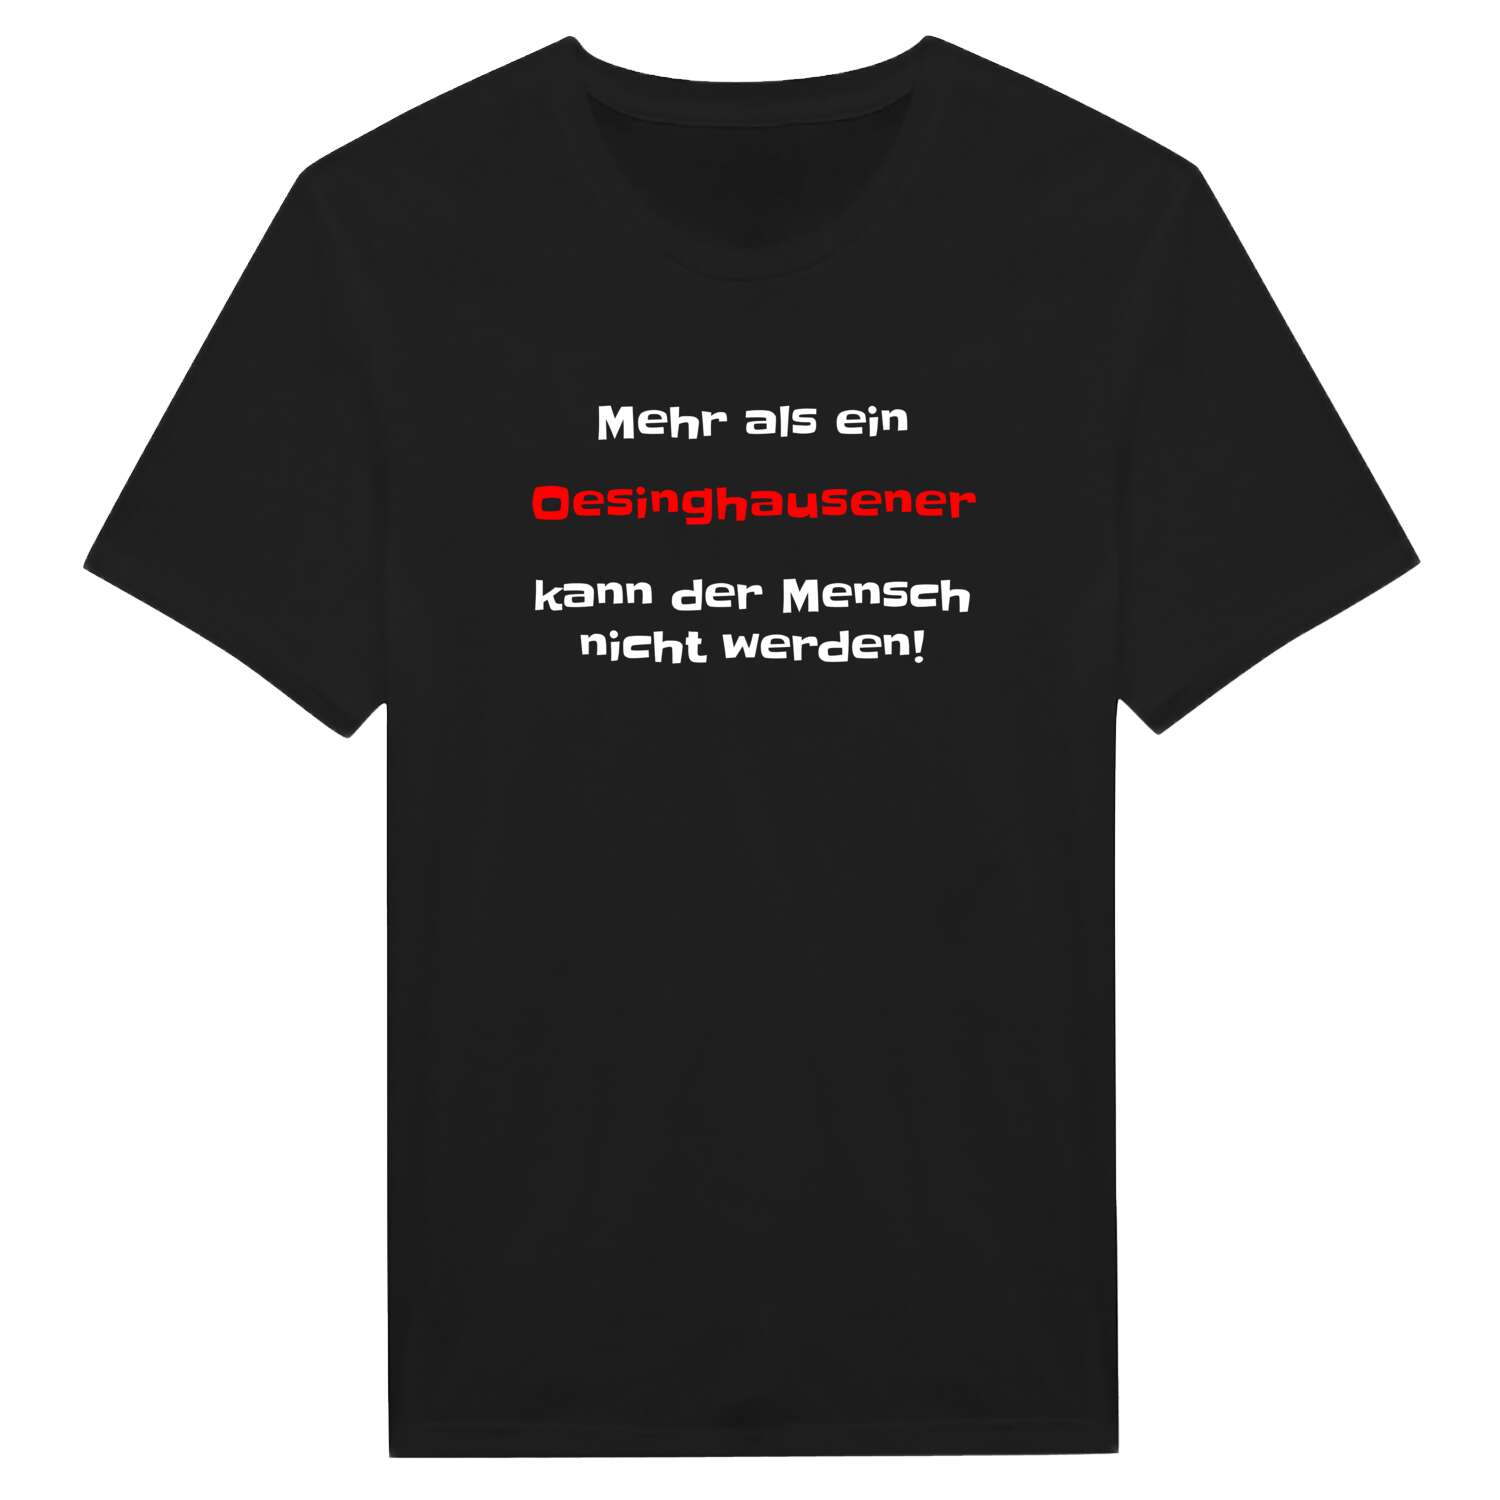 Oesinghausen T-Shirt »Mehr als ein«